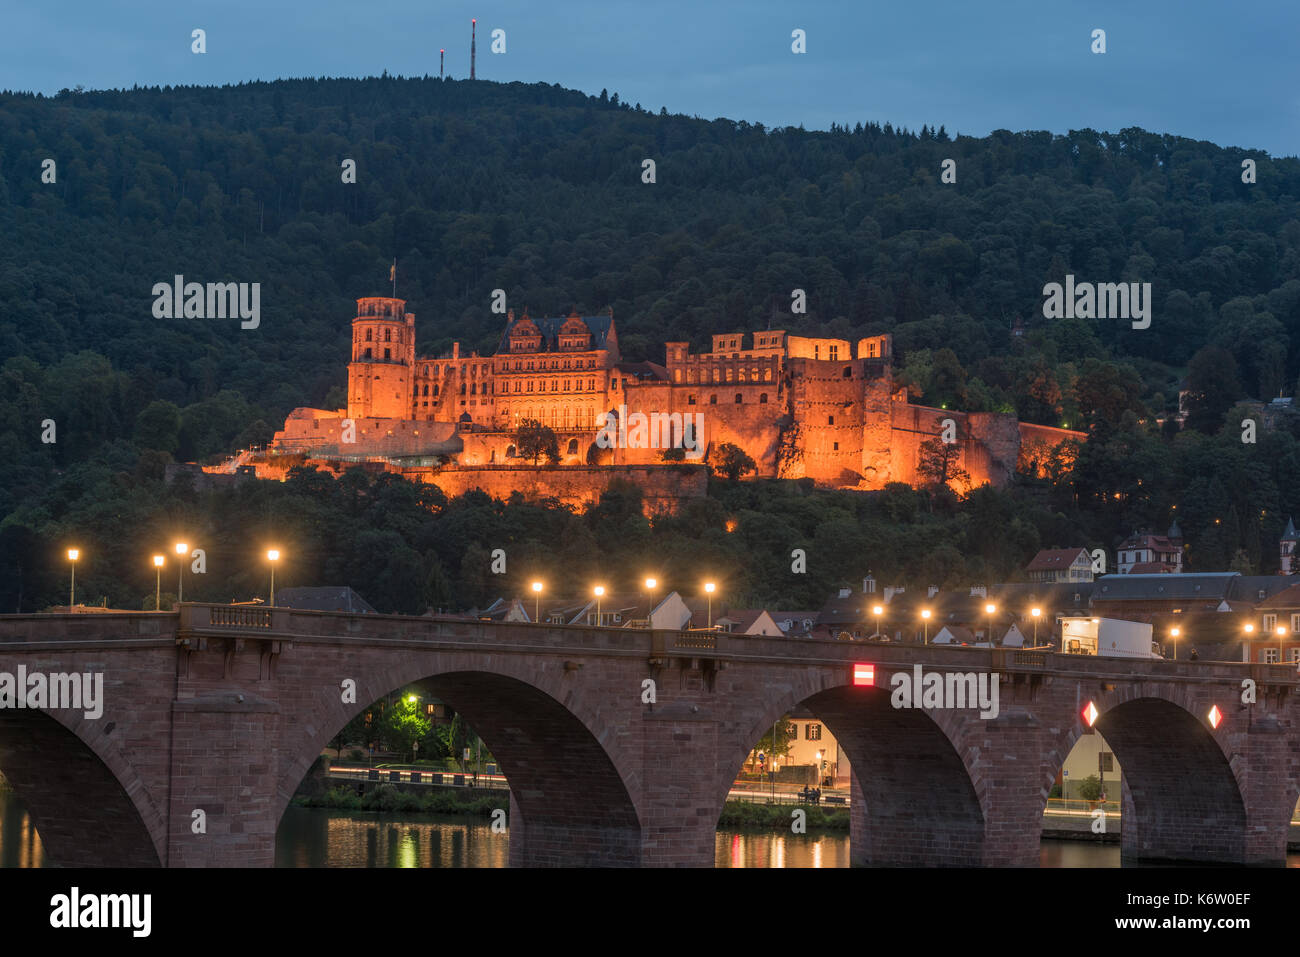 Reisen, Deutschland, Badenwürtemberg, Heidelberg, Neckarufer, September 02. Das bei Nacht beleuchtete Heidelberger Schloss. Stock Photo